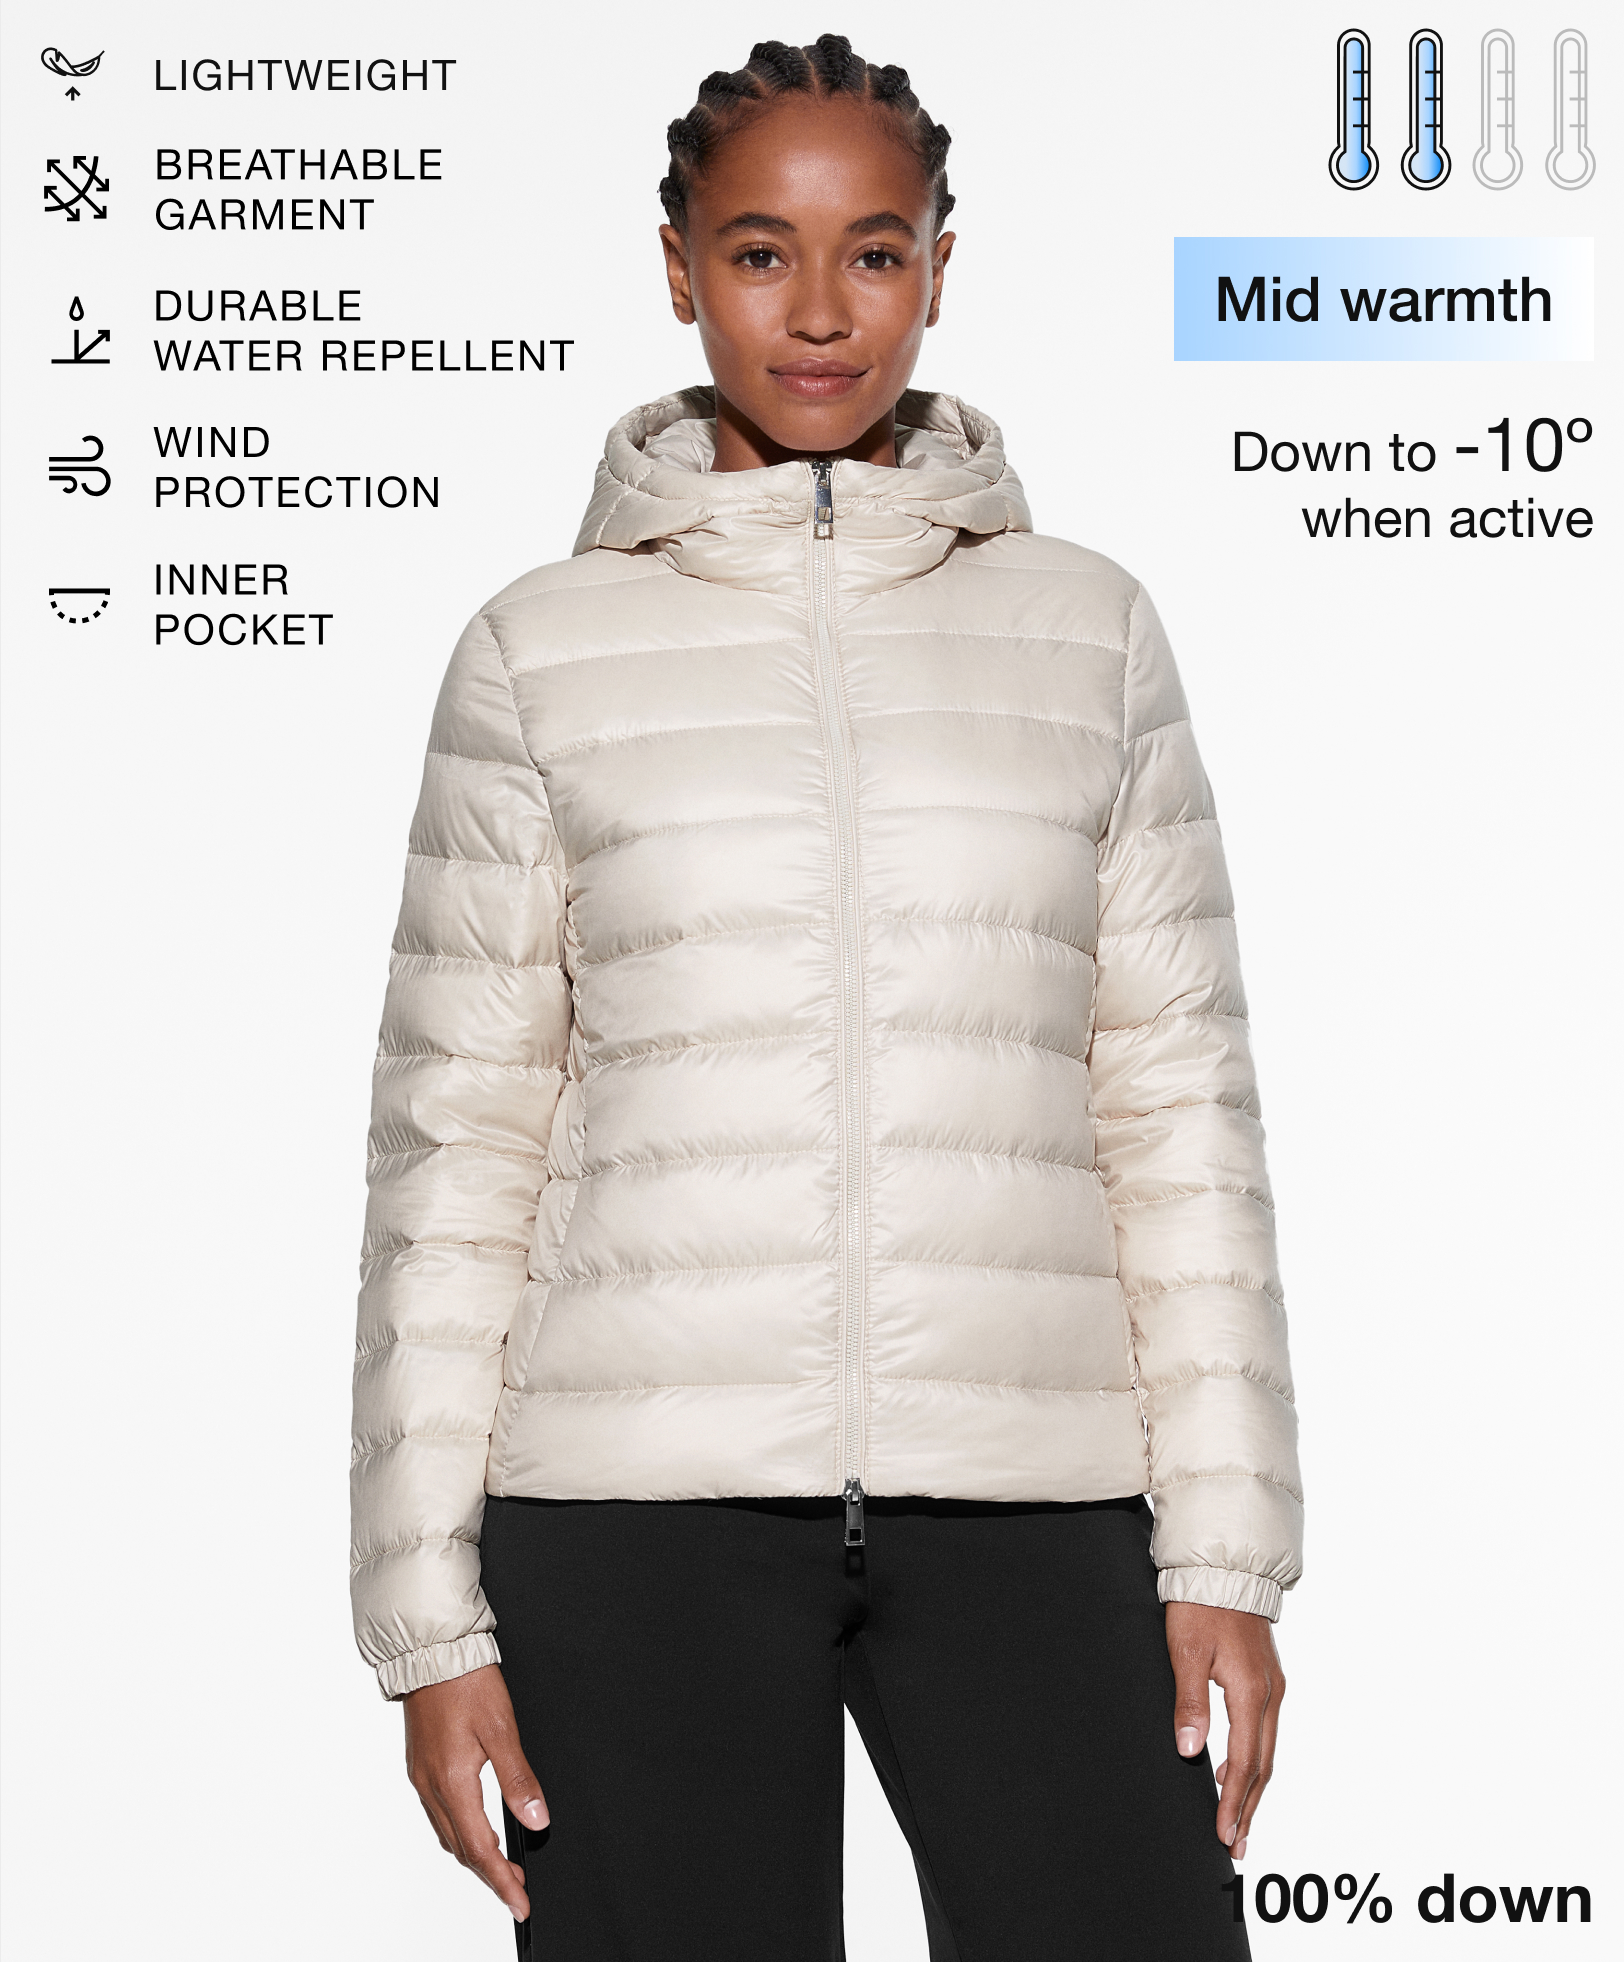 Ultralight waterafstotend jasje met 100% dons